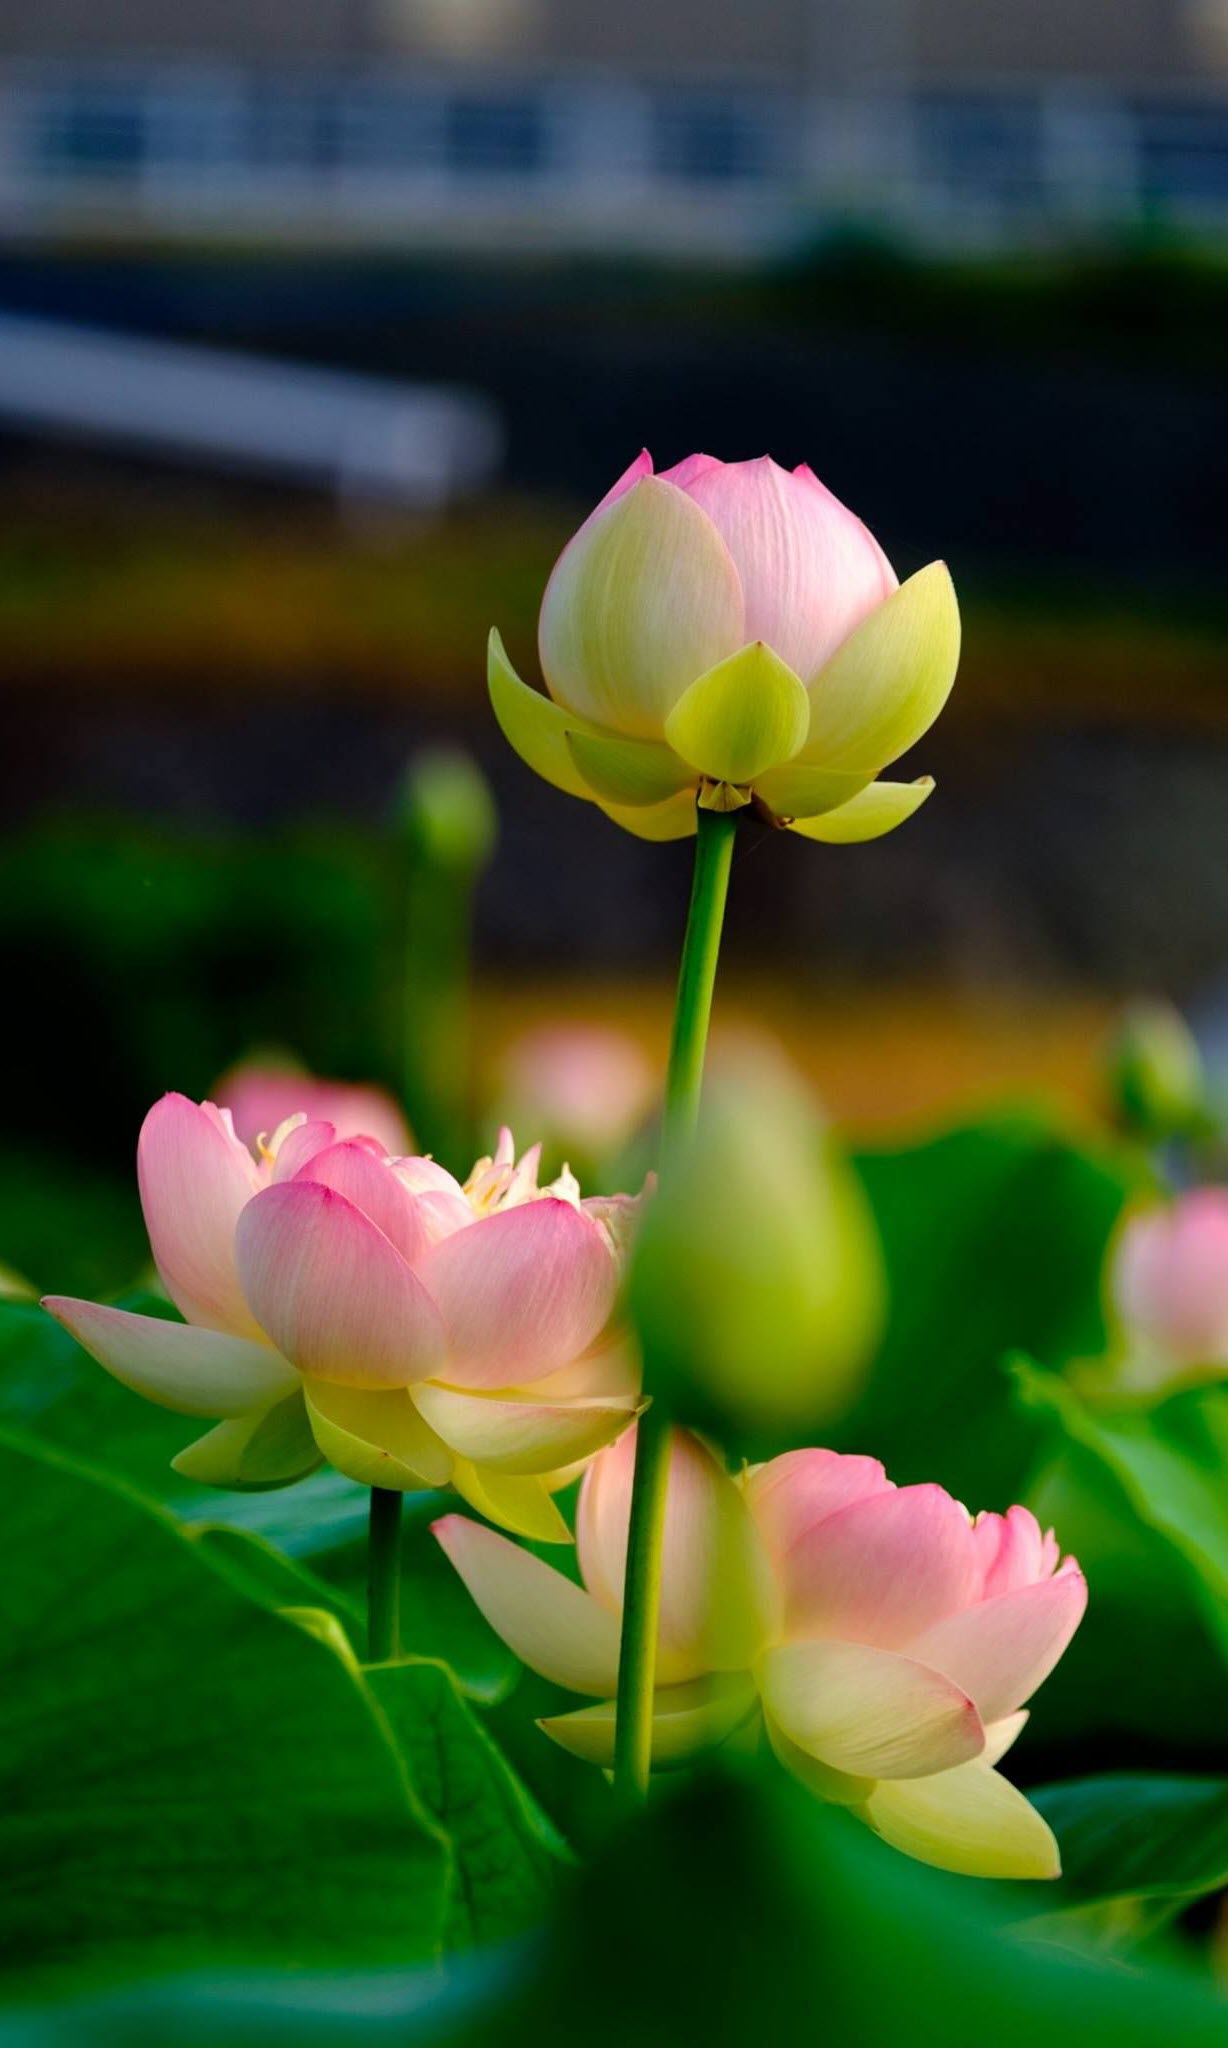 Chia sẻ với hơn 103 hình nền ảnh hoa sen phật giáo tuyệt vời nhất thdonghoadianeduvn